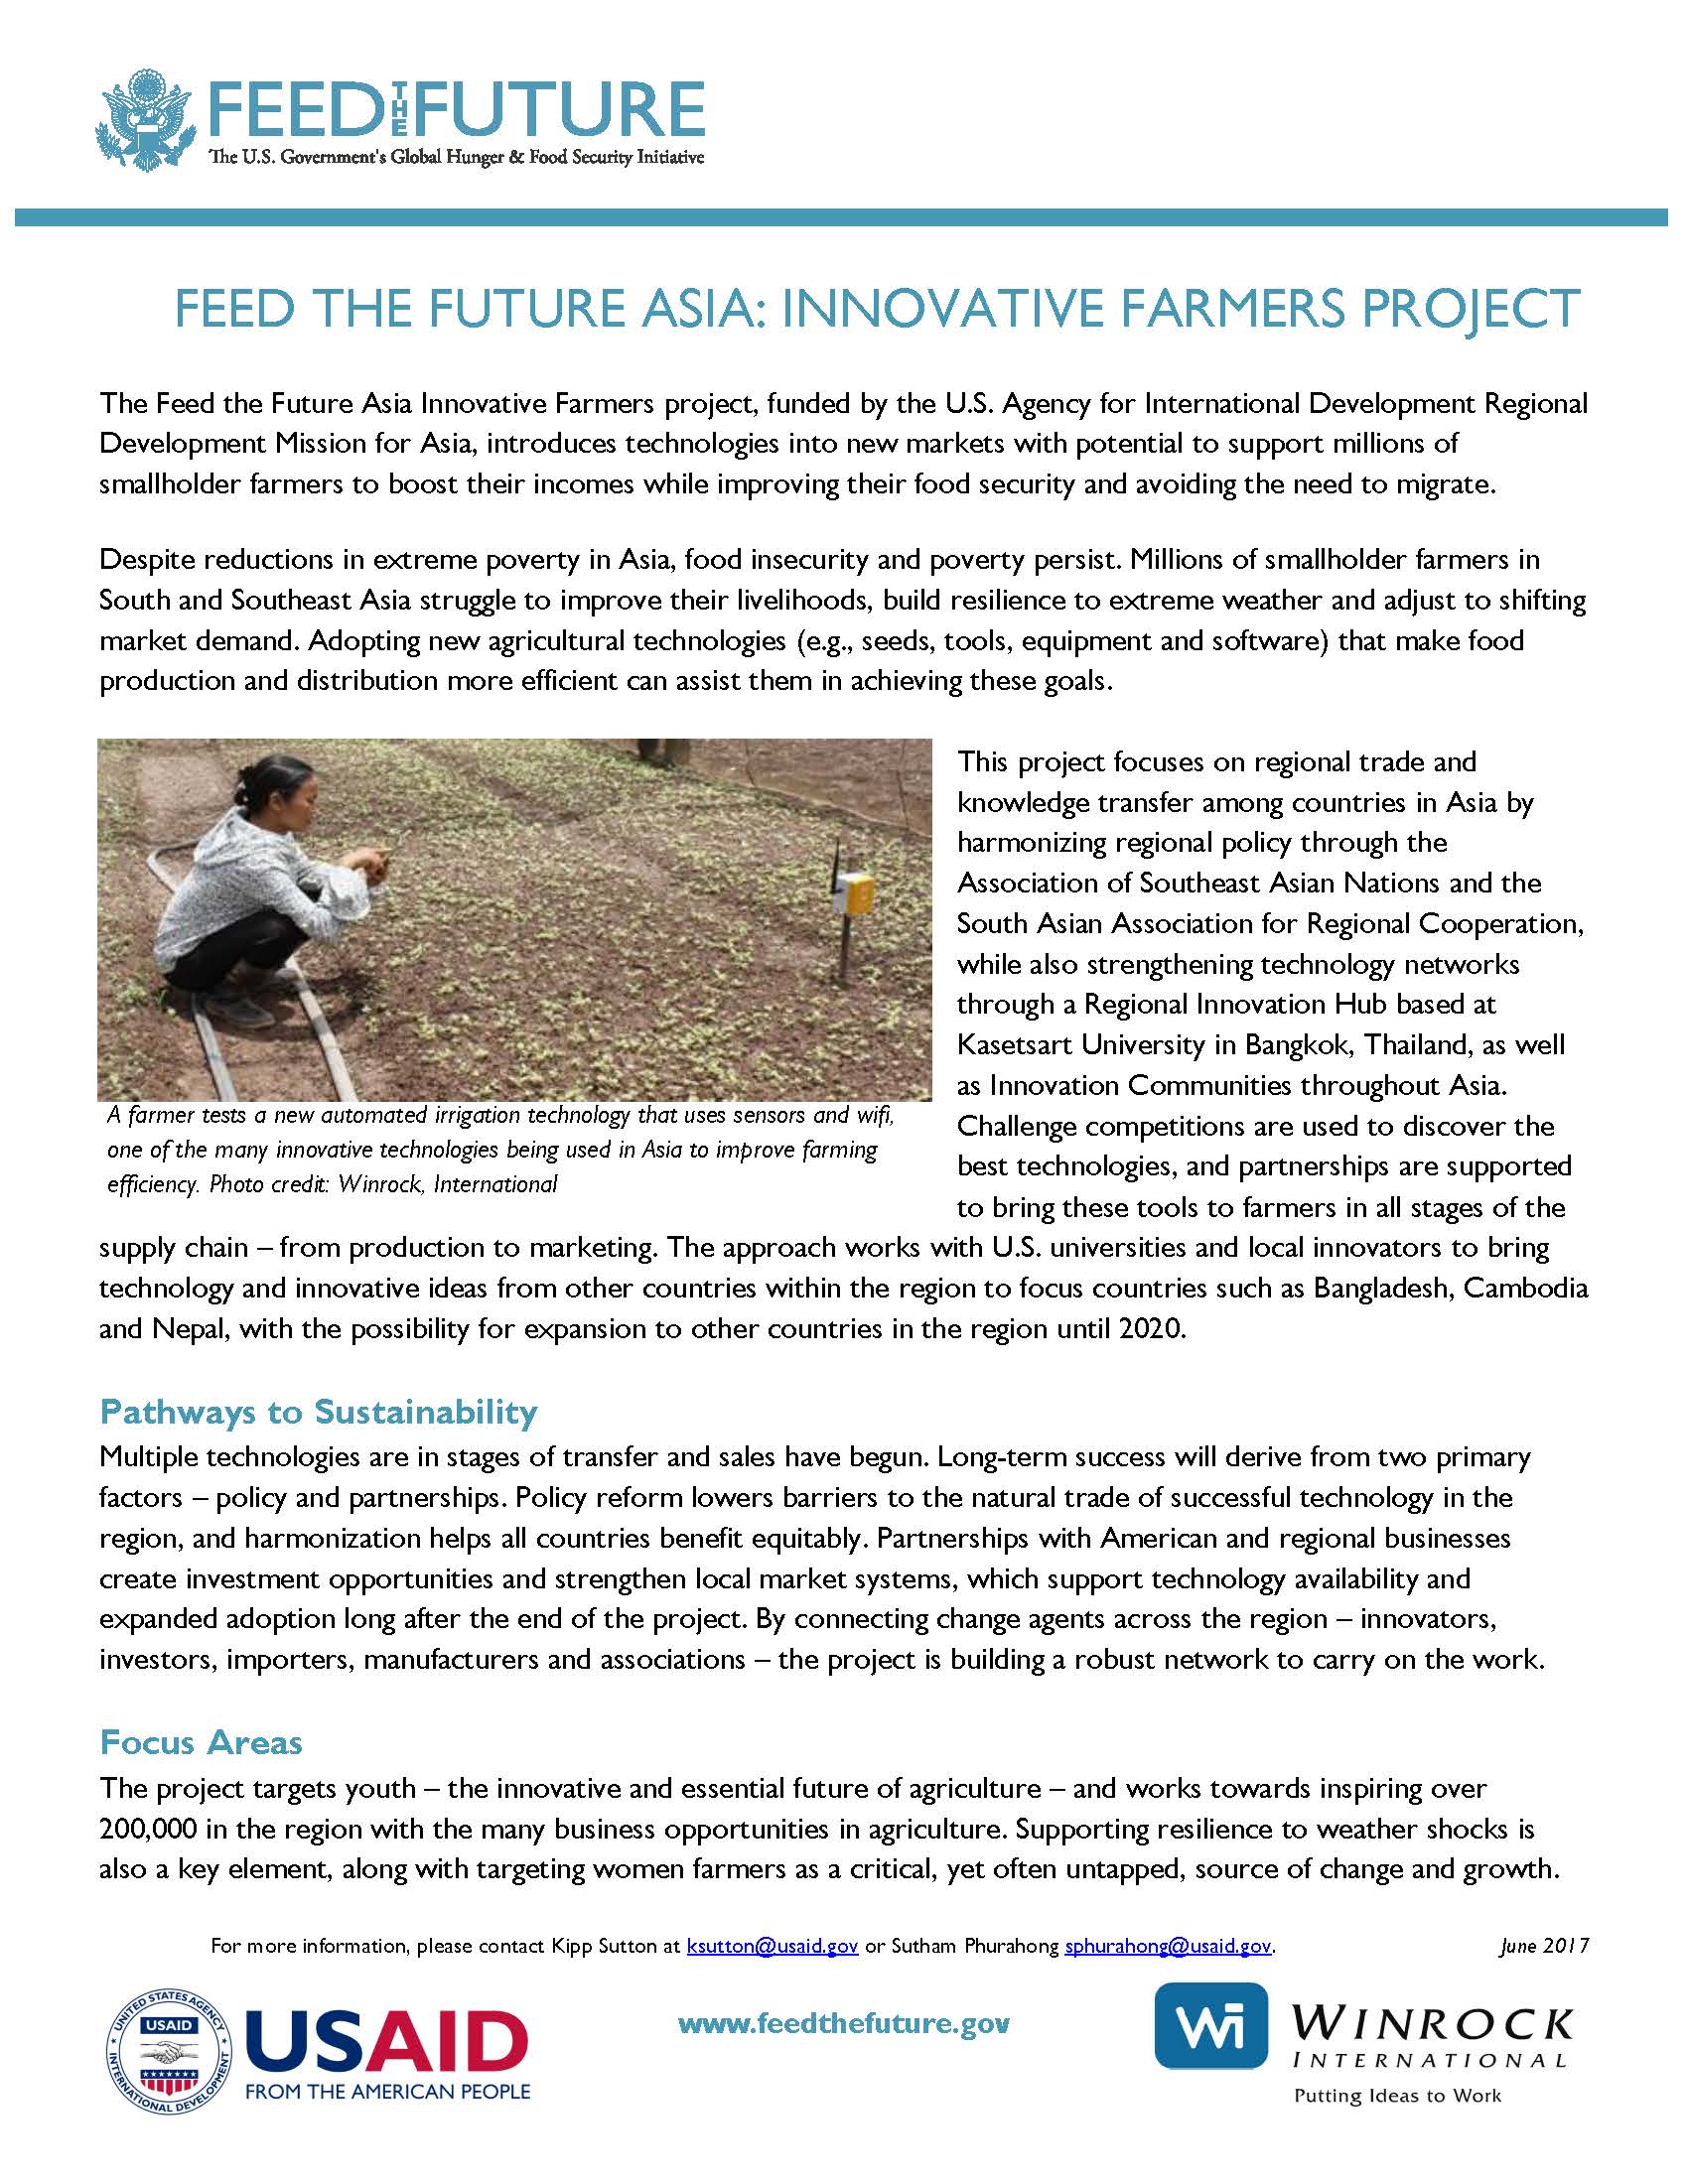 Feed the Future Asia Innovative Farmers_June 2017